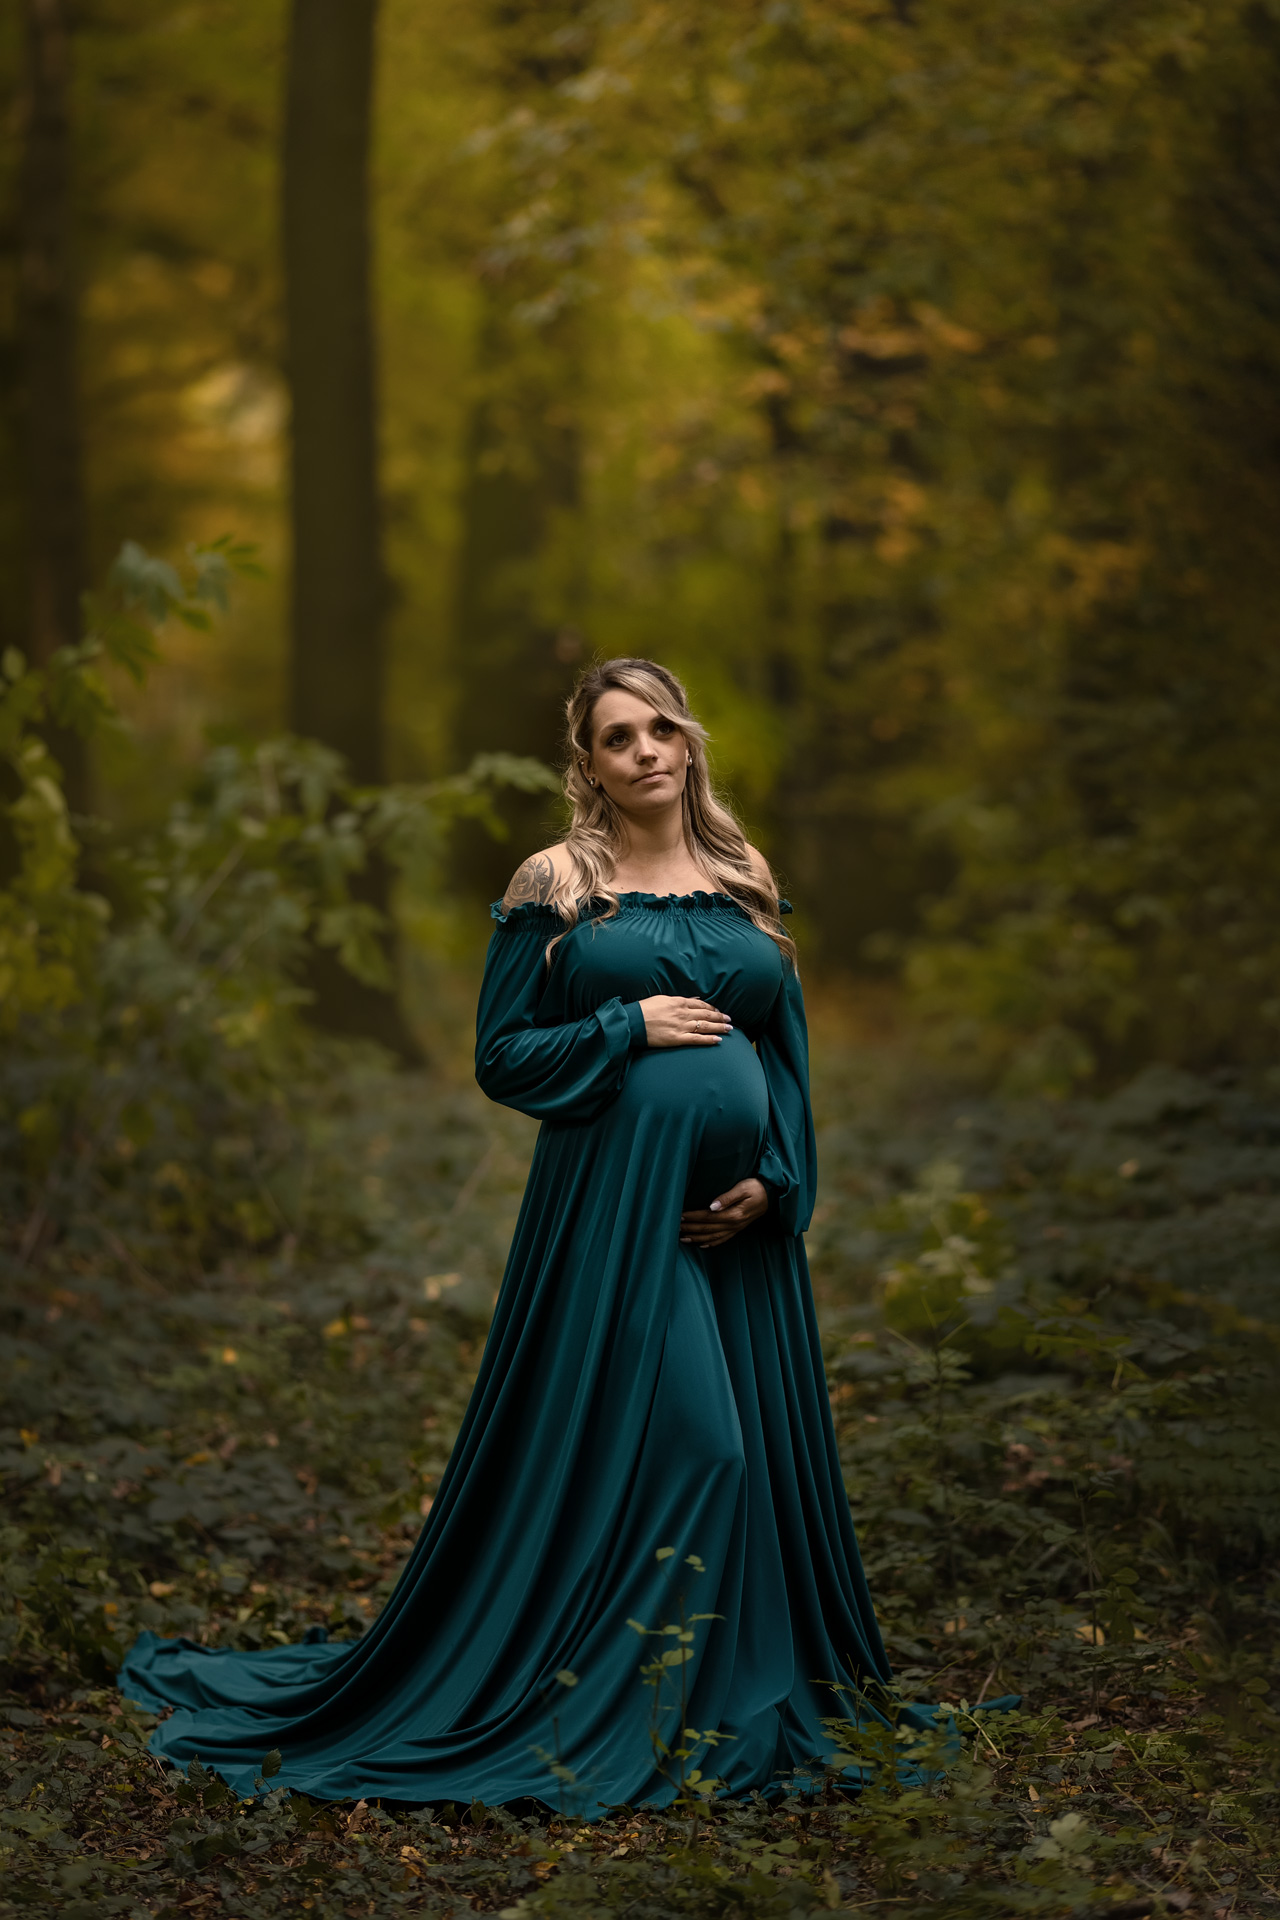 Babybauchfotografie im grünen Kleid im Farn